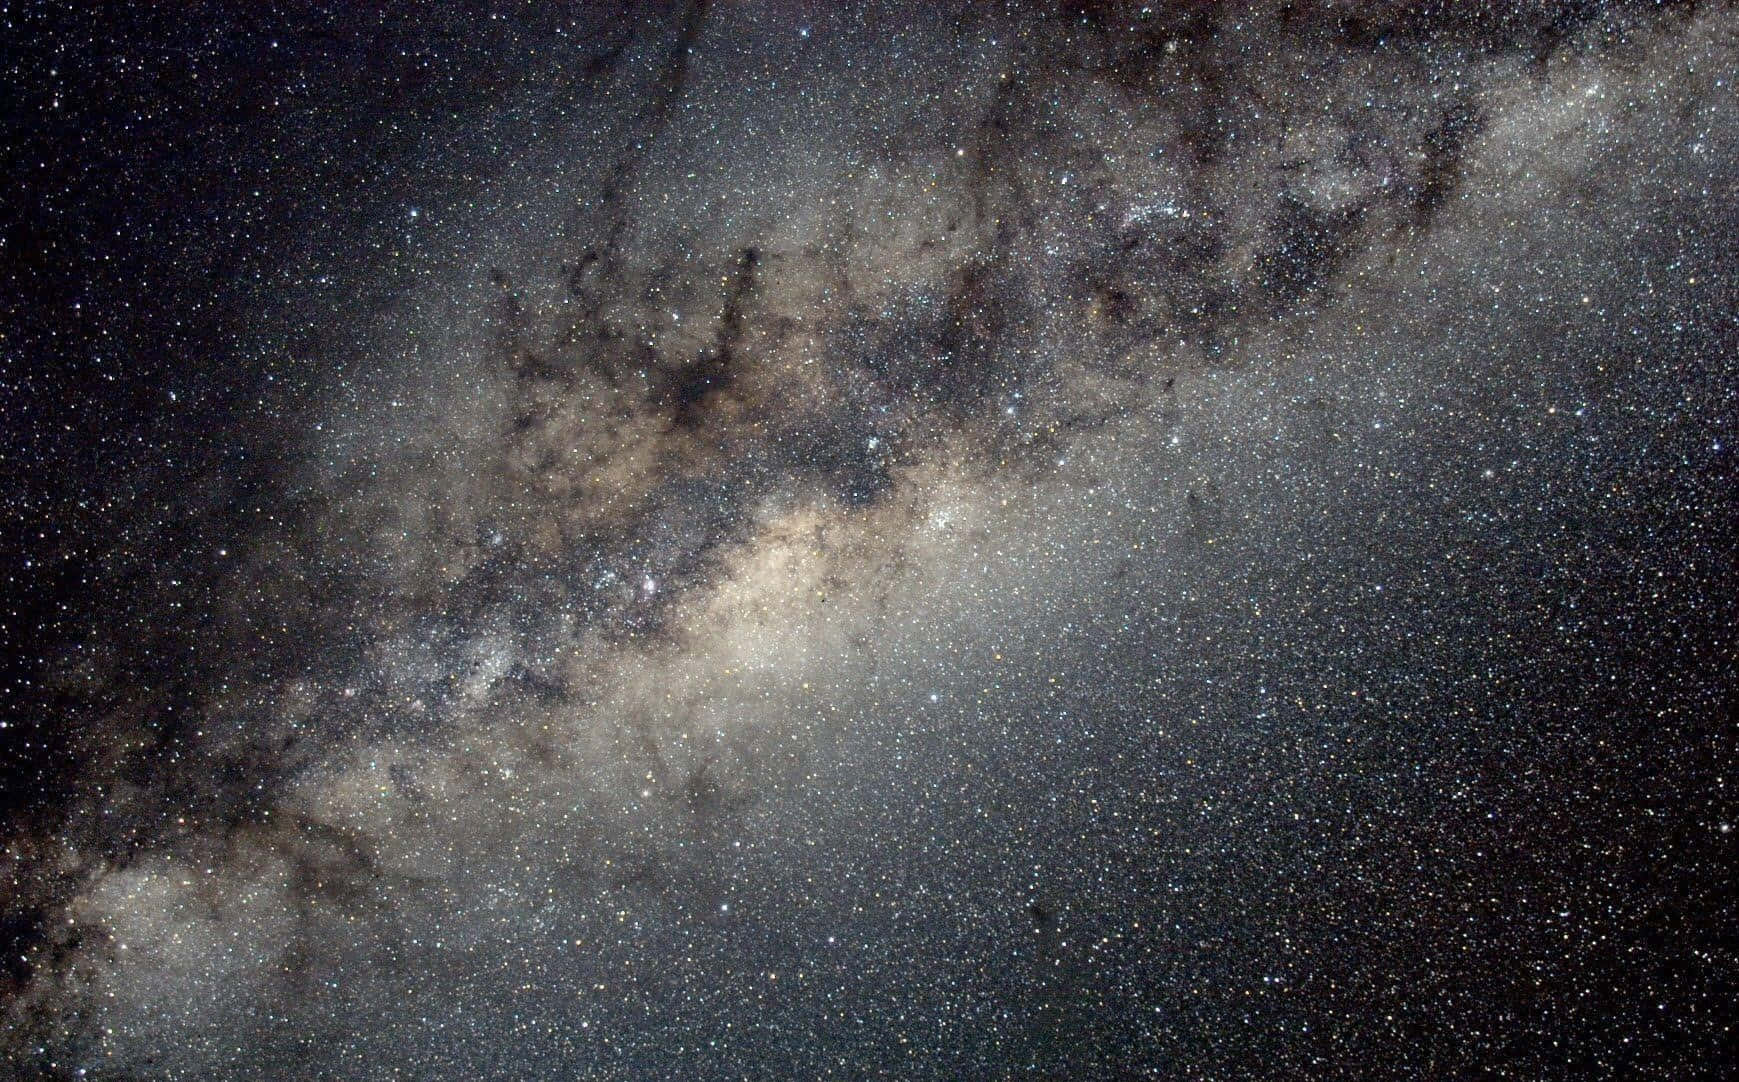 Elhorizonte Iluminado Por El Cielo Nocturno Lleno De Estrellas De La Vía Láctea.